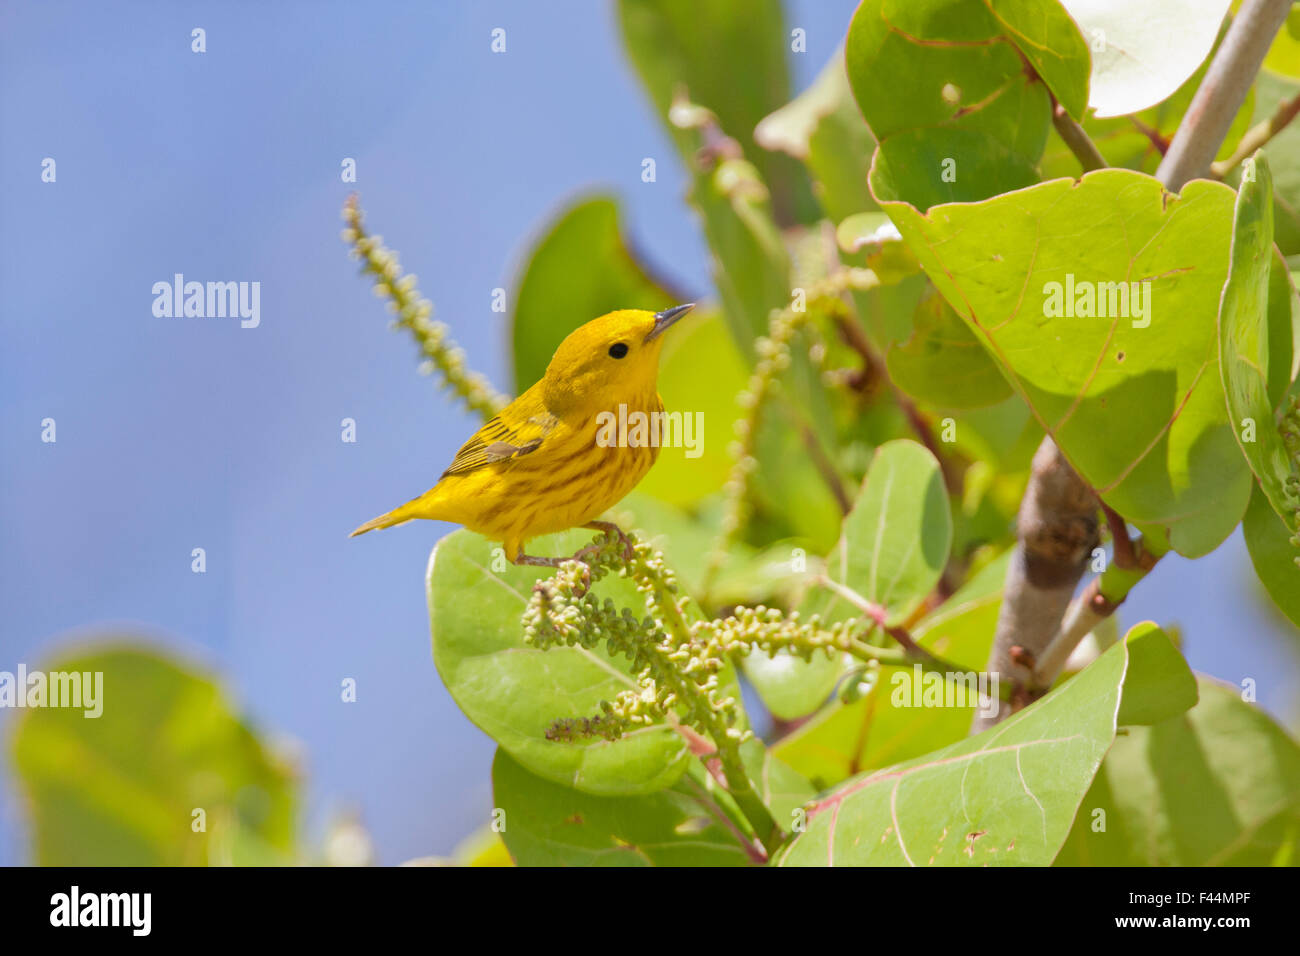 Paruline jaune perché sur feuilles de vigne dans la région de Fort Desoto national park, Floride Banque D'Images